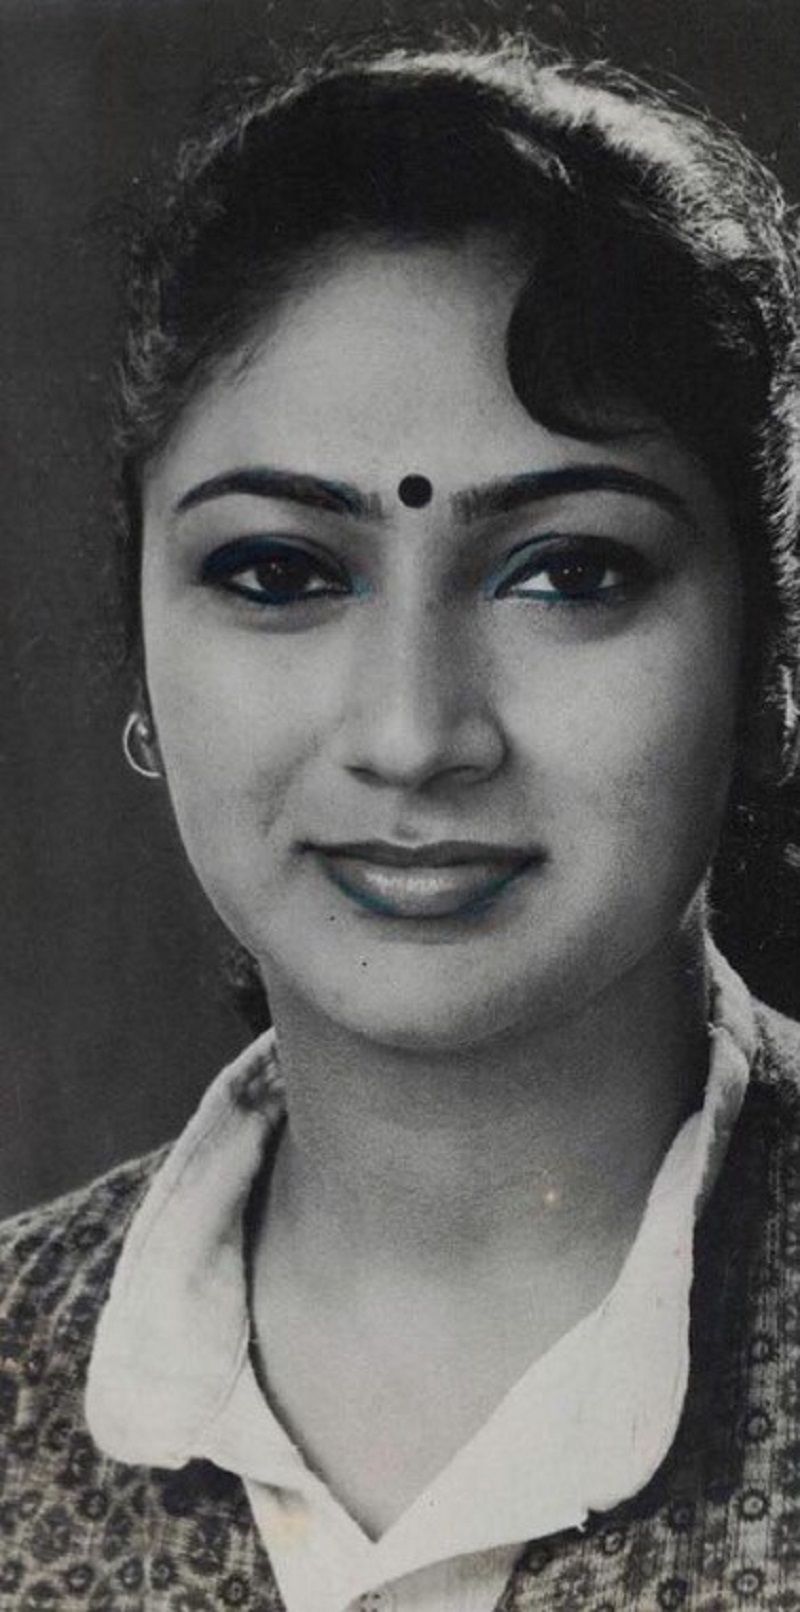 Rekha Gupta during her college days